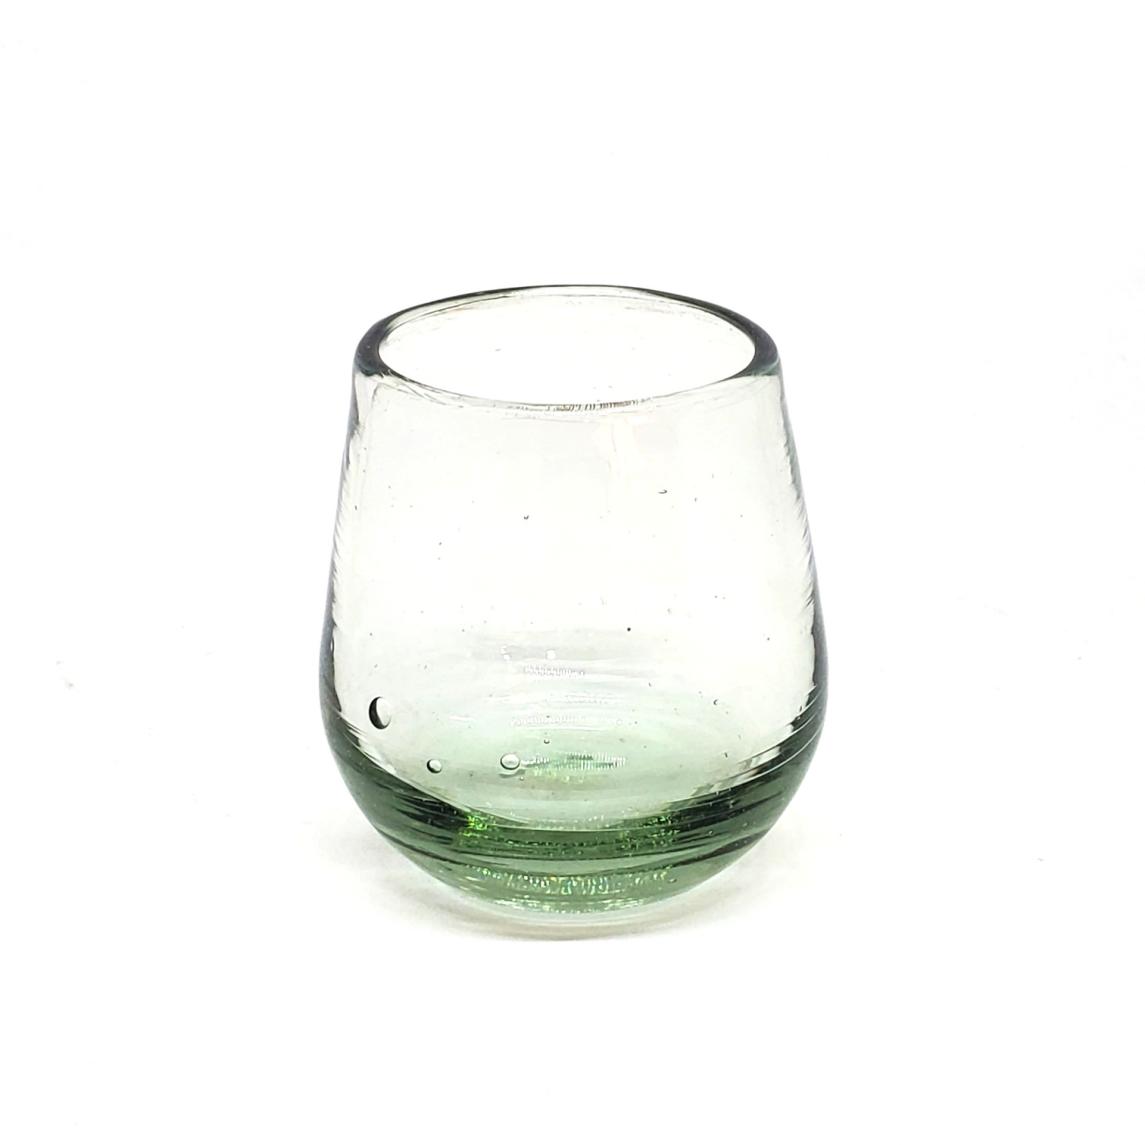 Color Transparente al Mayoreo / Poly Transparente (Juego de 6) / Nuestros vasos transparentes son fabricados uno por uno a base de vidrio reciclado, haciéndolos obras de arte únicas.